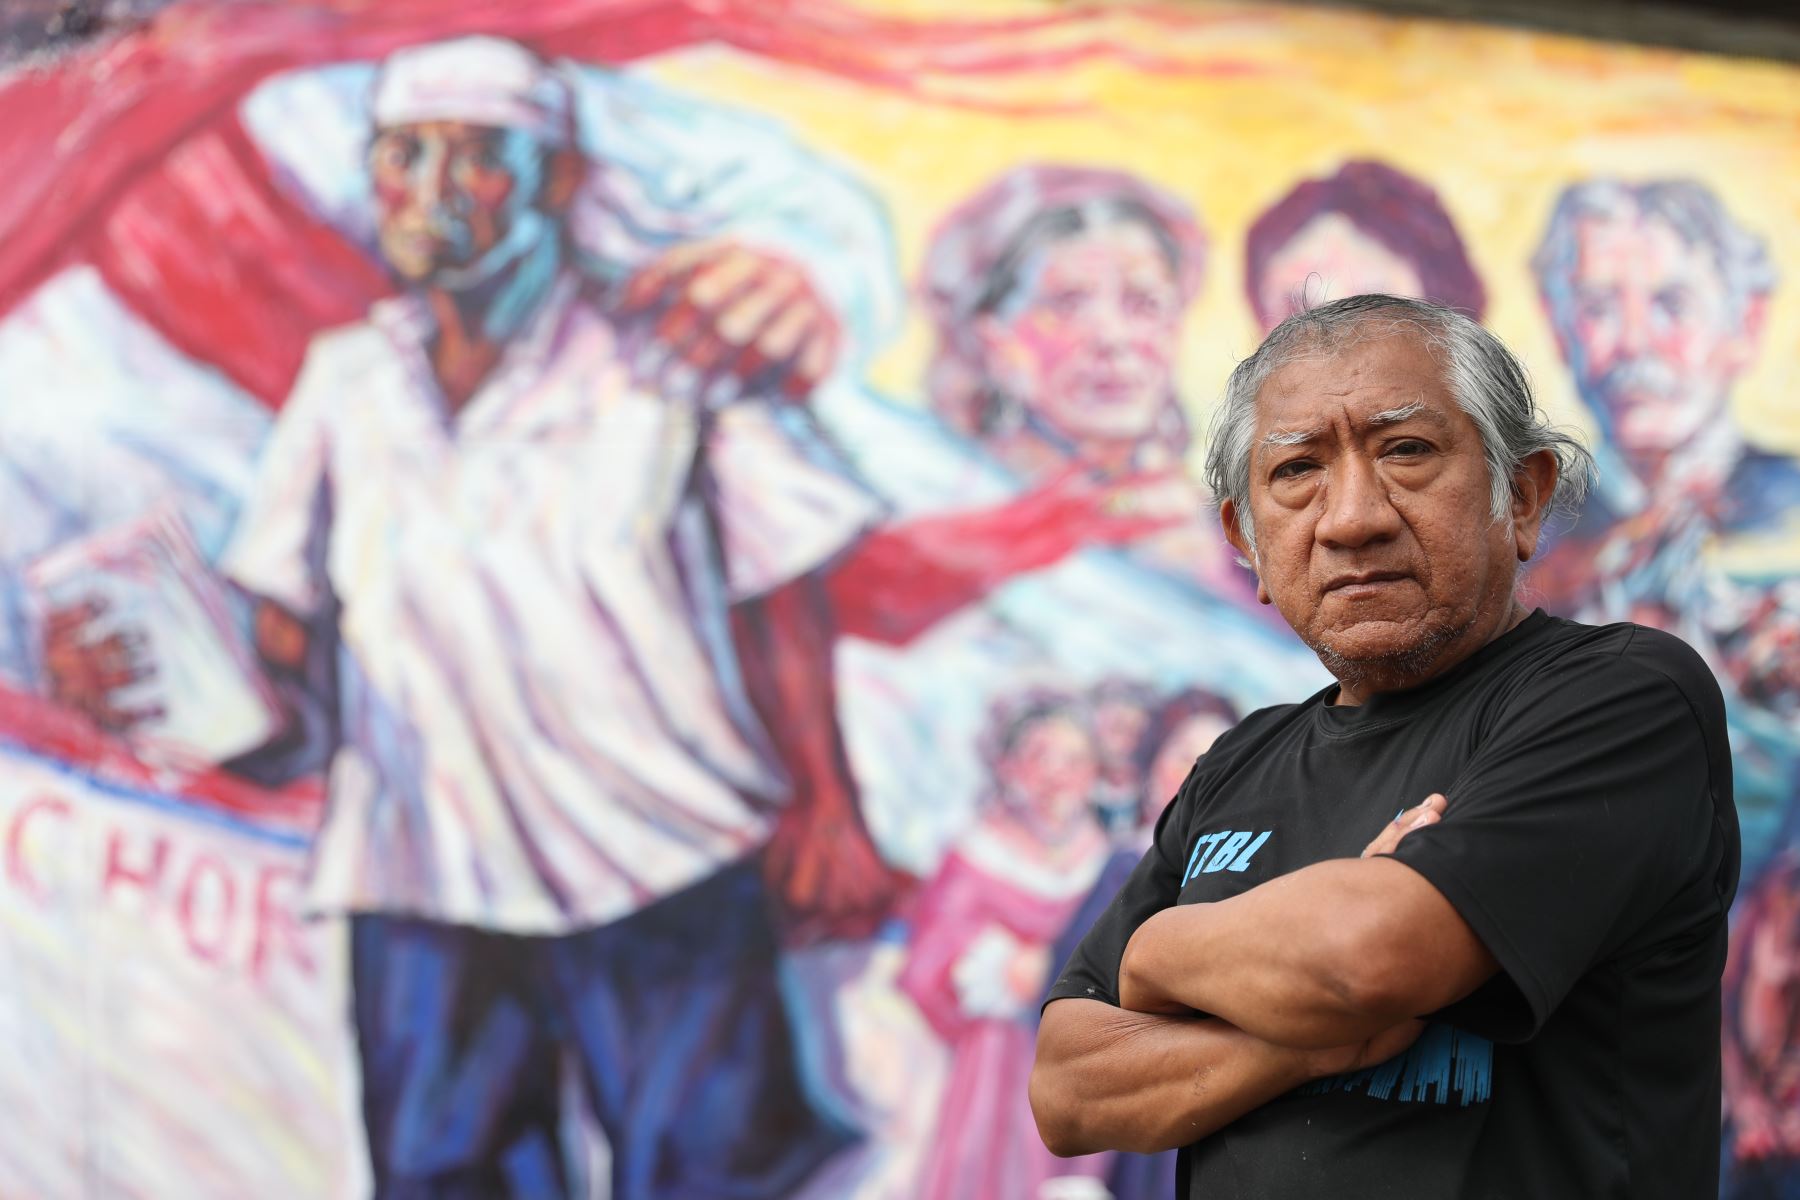 Pintor Bruno Portuguez en el muelle de pescadores de Chorrillos. Foto: ANDINA/Daniel Bracamonte